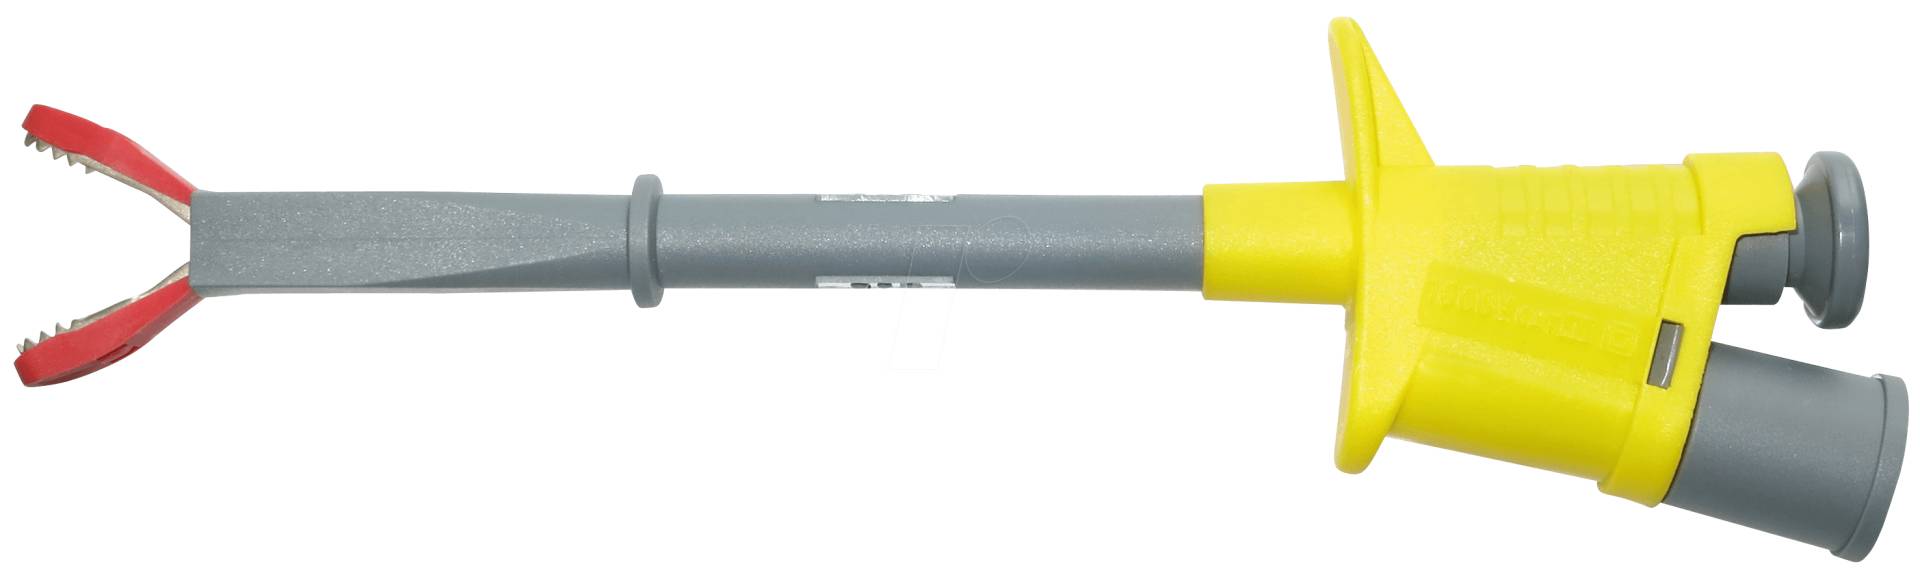 KH 6009-PROB GE - Krokodilklemmen, 15 mm, 6 A, gelb, starr von ELECTRO PJP